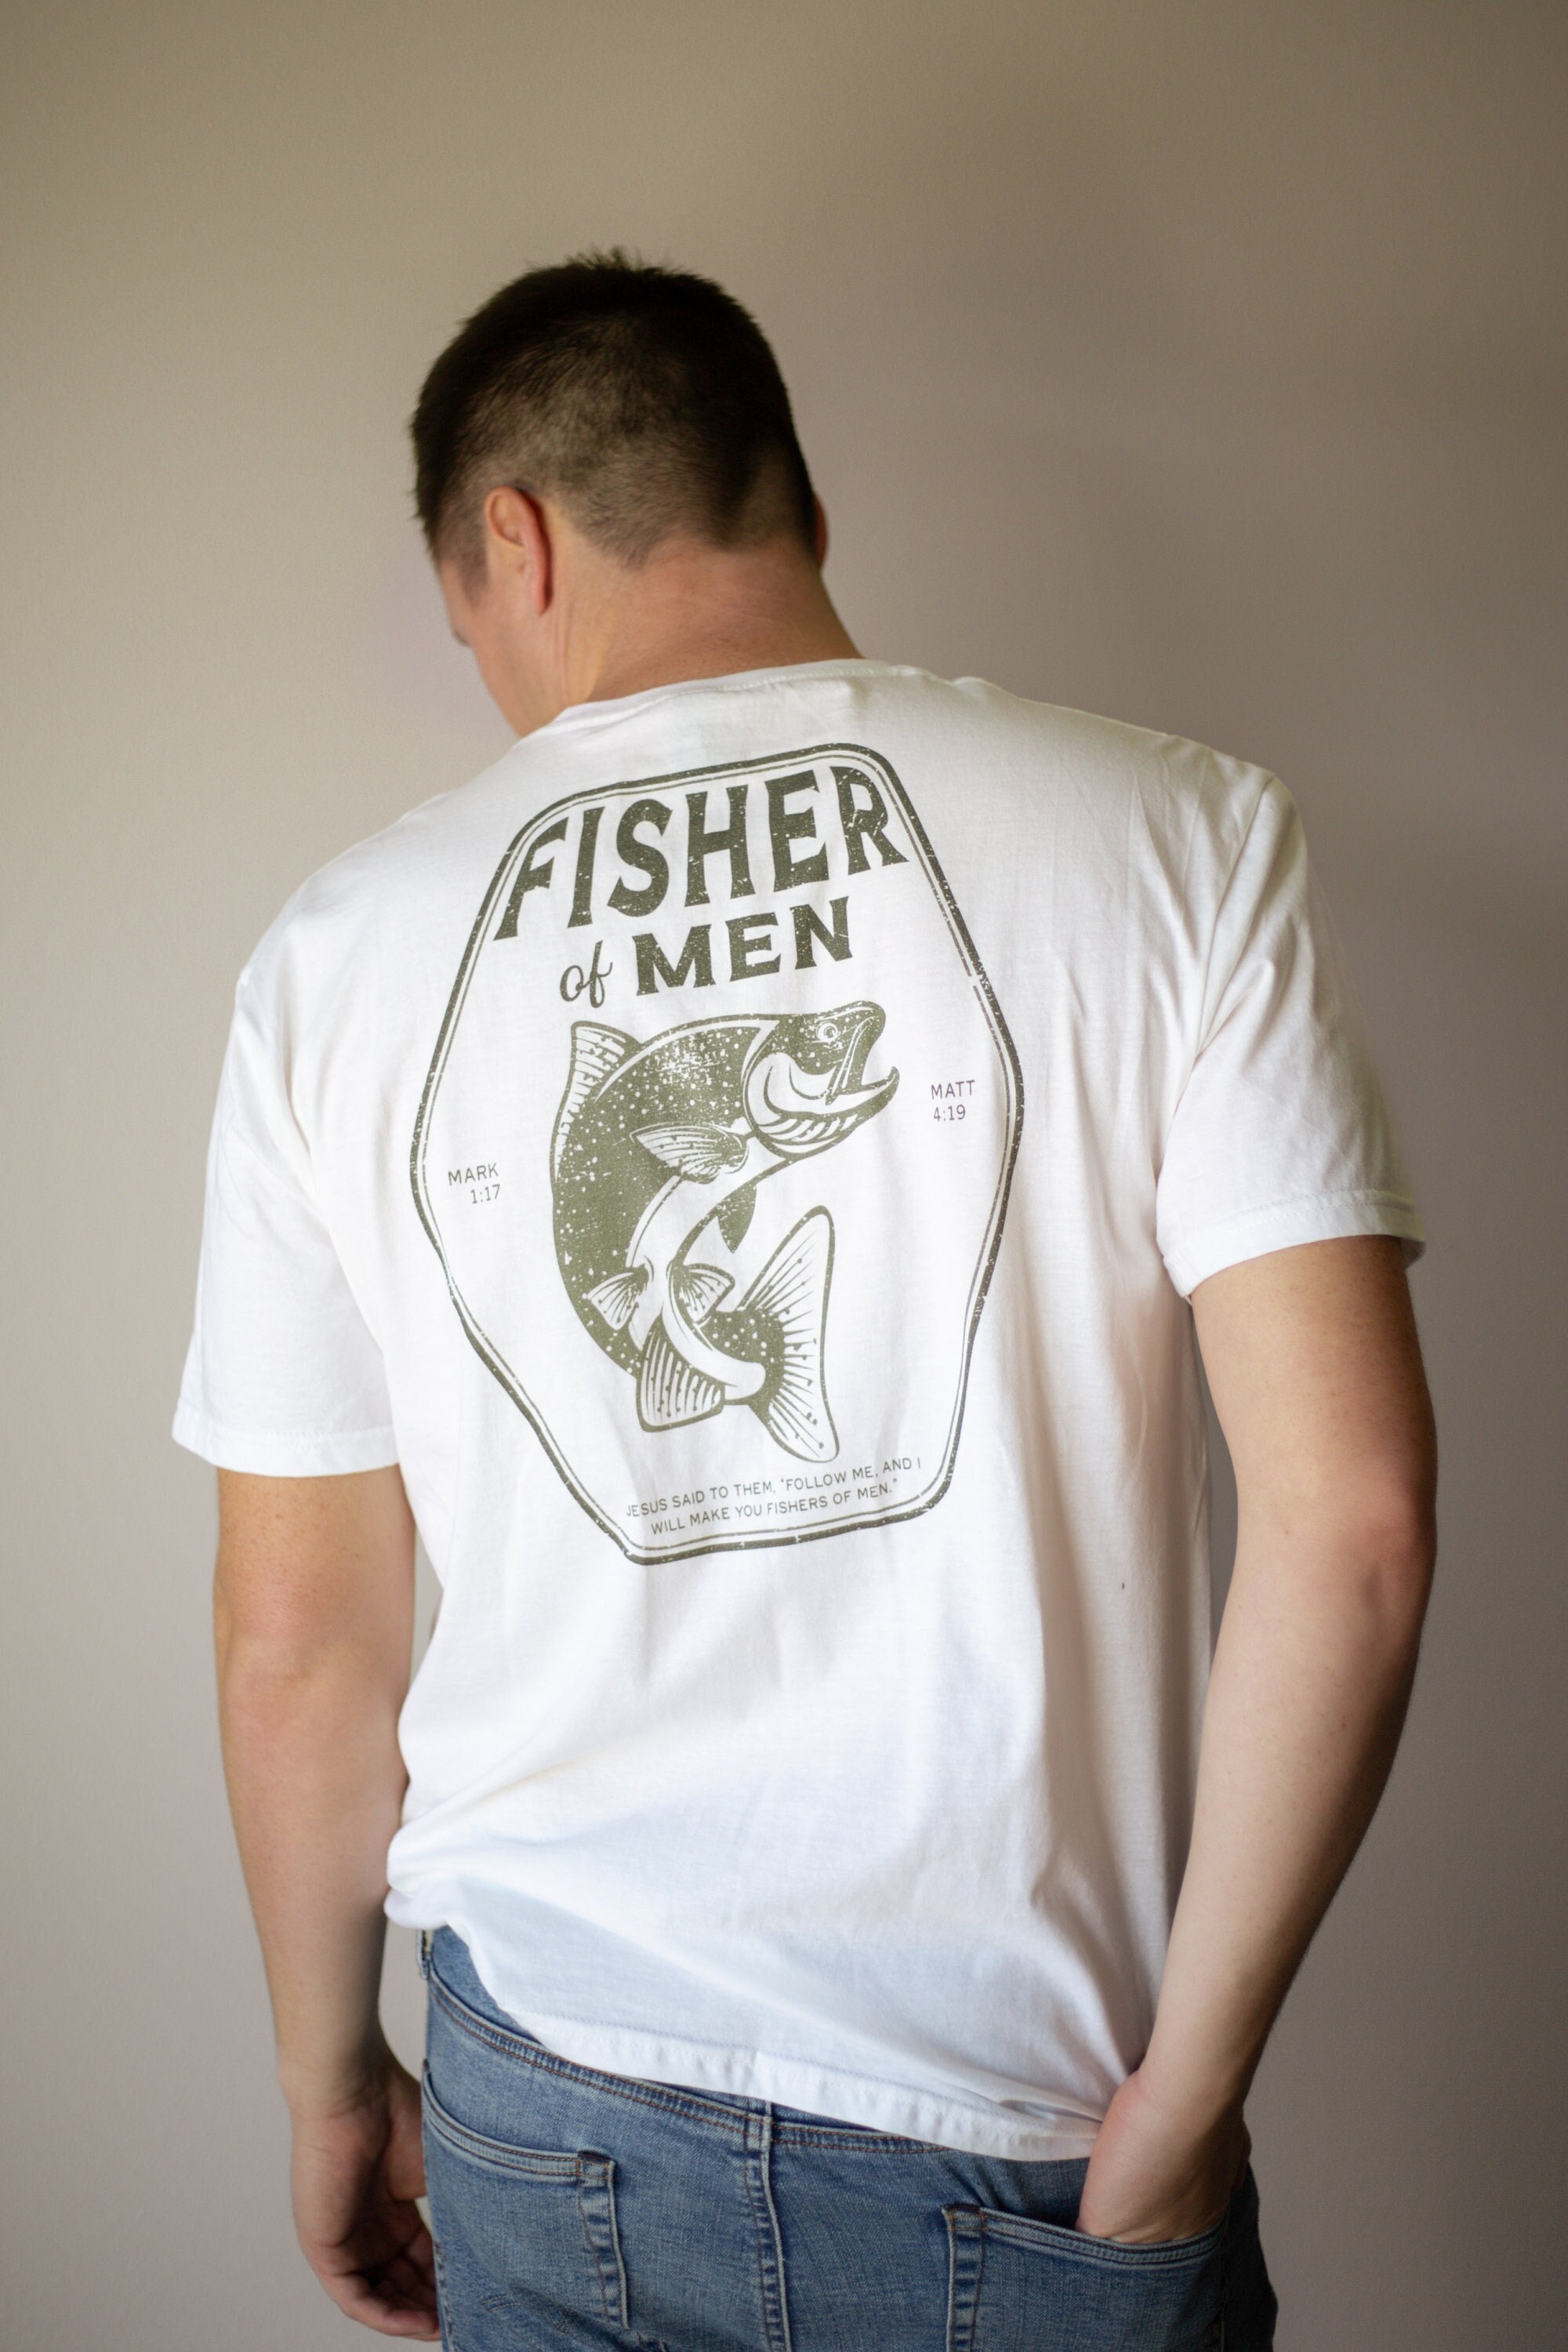 Fisher of Men Christian Shirt Christian Apparel Christian Shirt for Men  Christian Tshirt Fishing Shirt Fisherman Shirt 